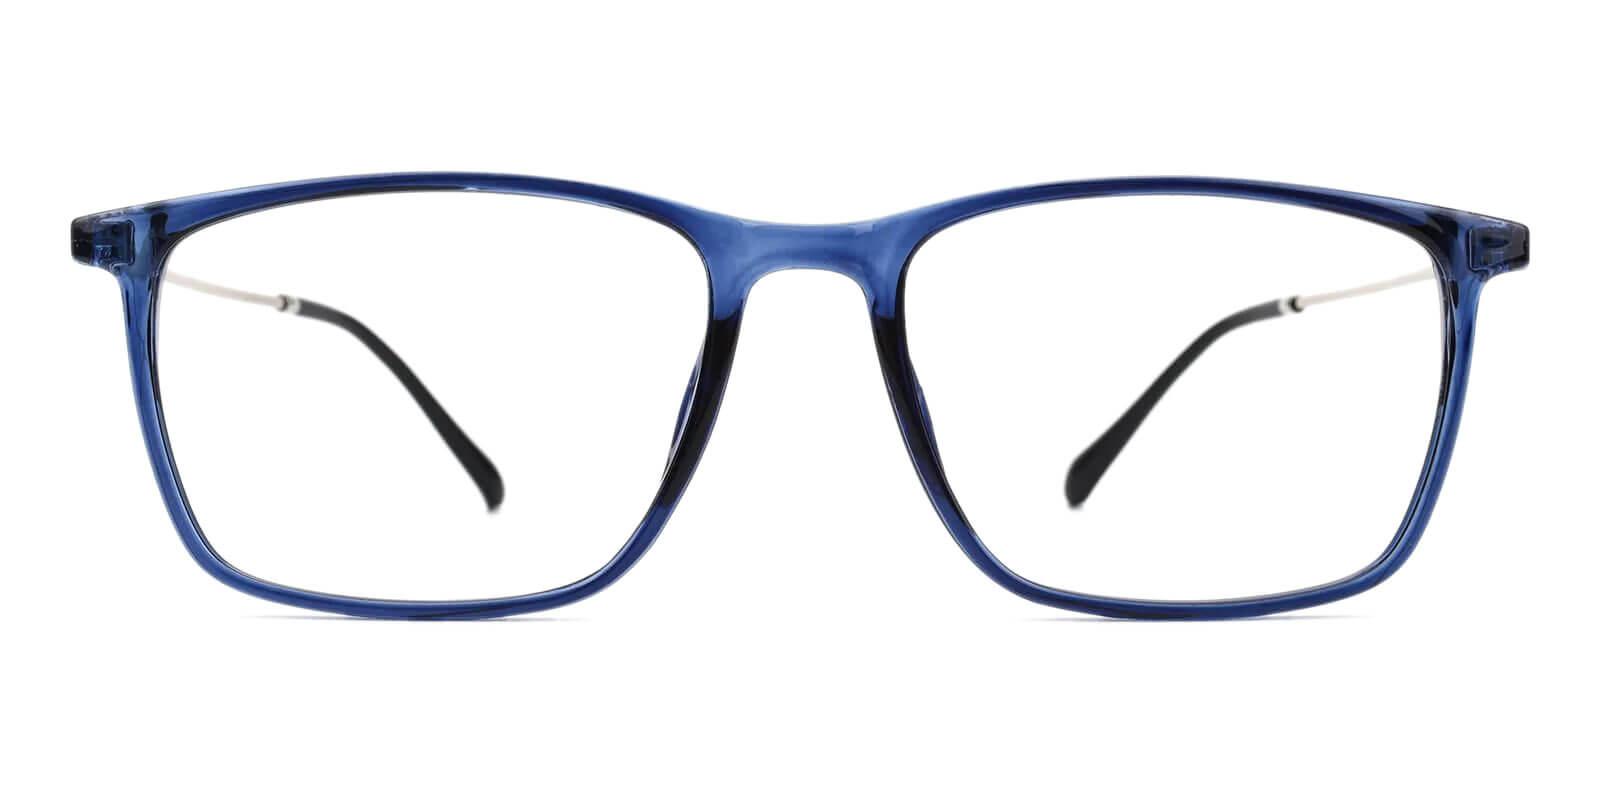 Honor Blue TR Eyeglasses , UniversalBridgeFit , Lightweight Frames from ABBE Glasses